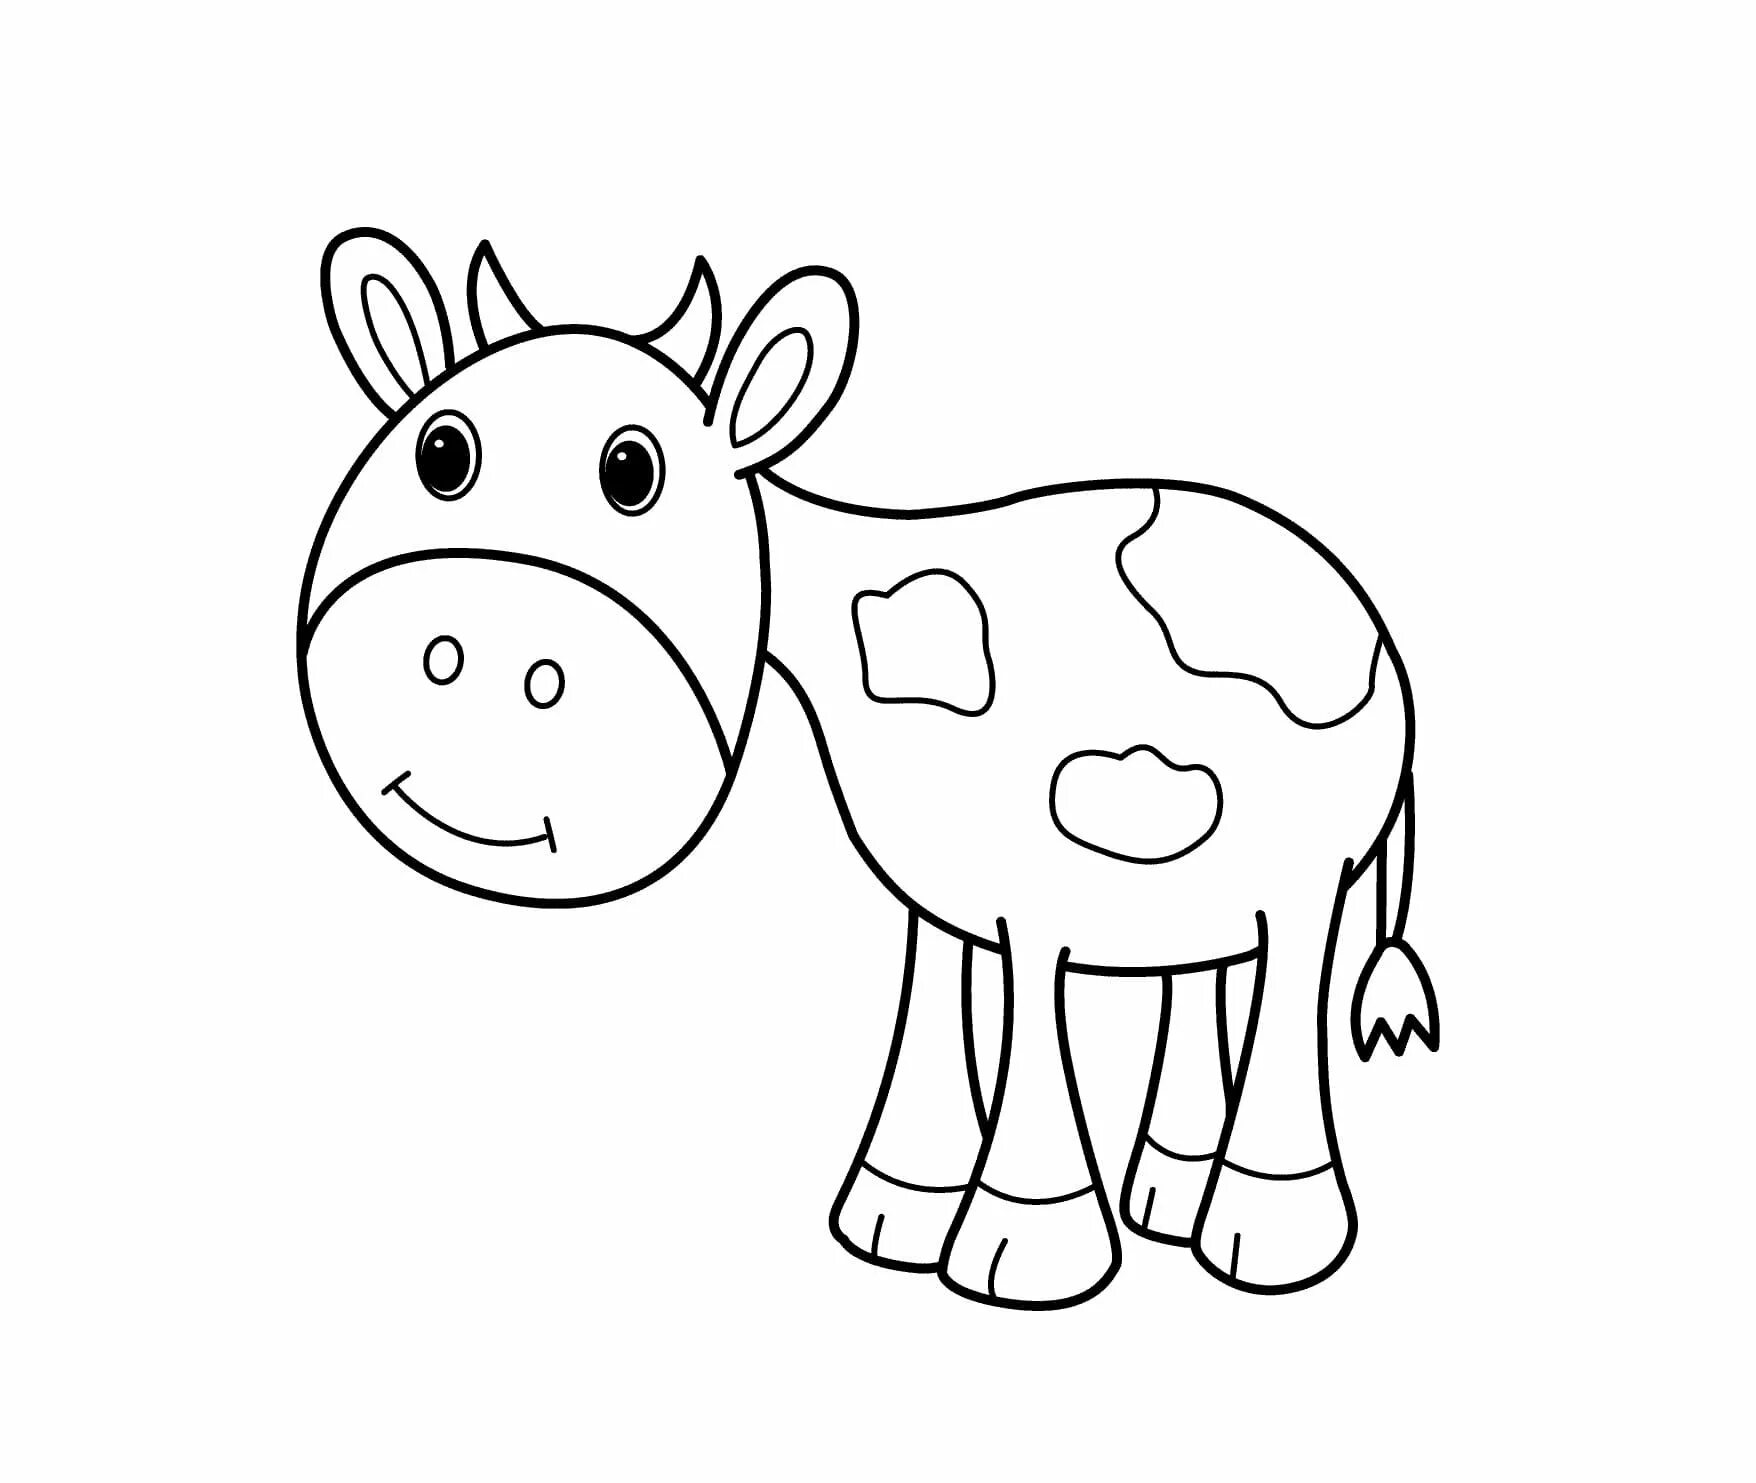 Раскраски коровки для детей. Корова раскраска для детей. Коровка раскраска для детей. Корова раскраска для малышей. Картинка для раскрашивания корова для детей.